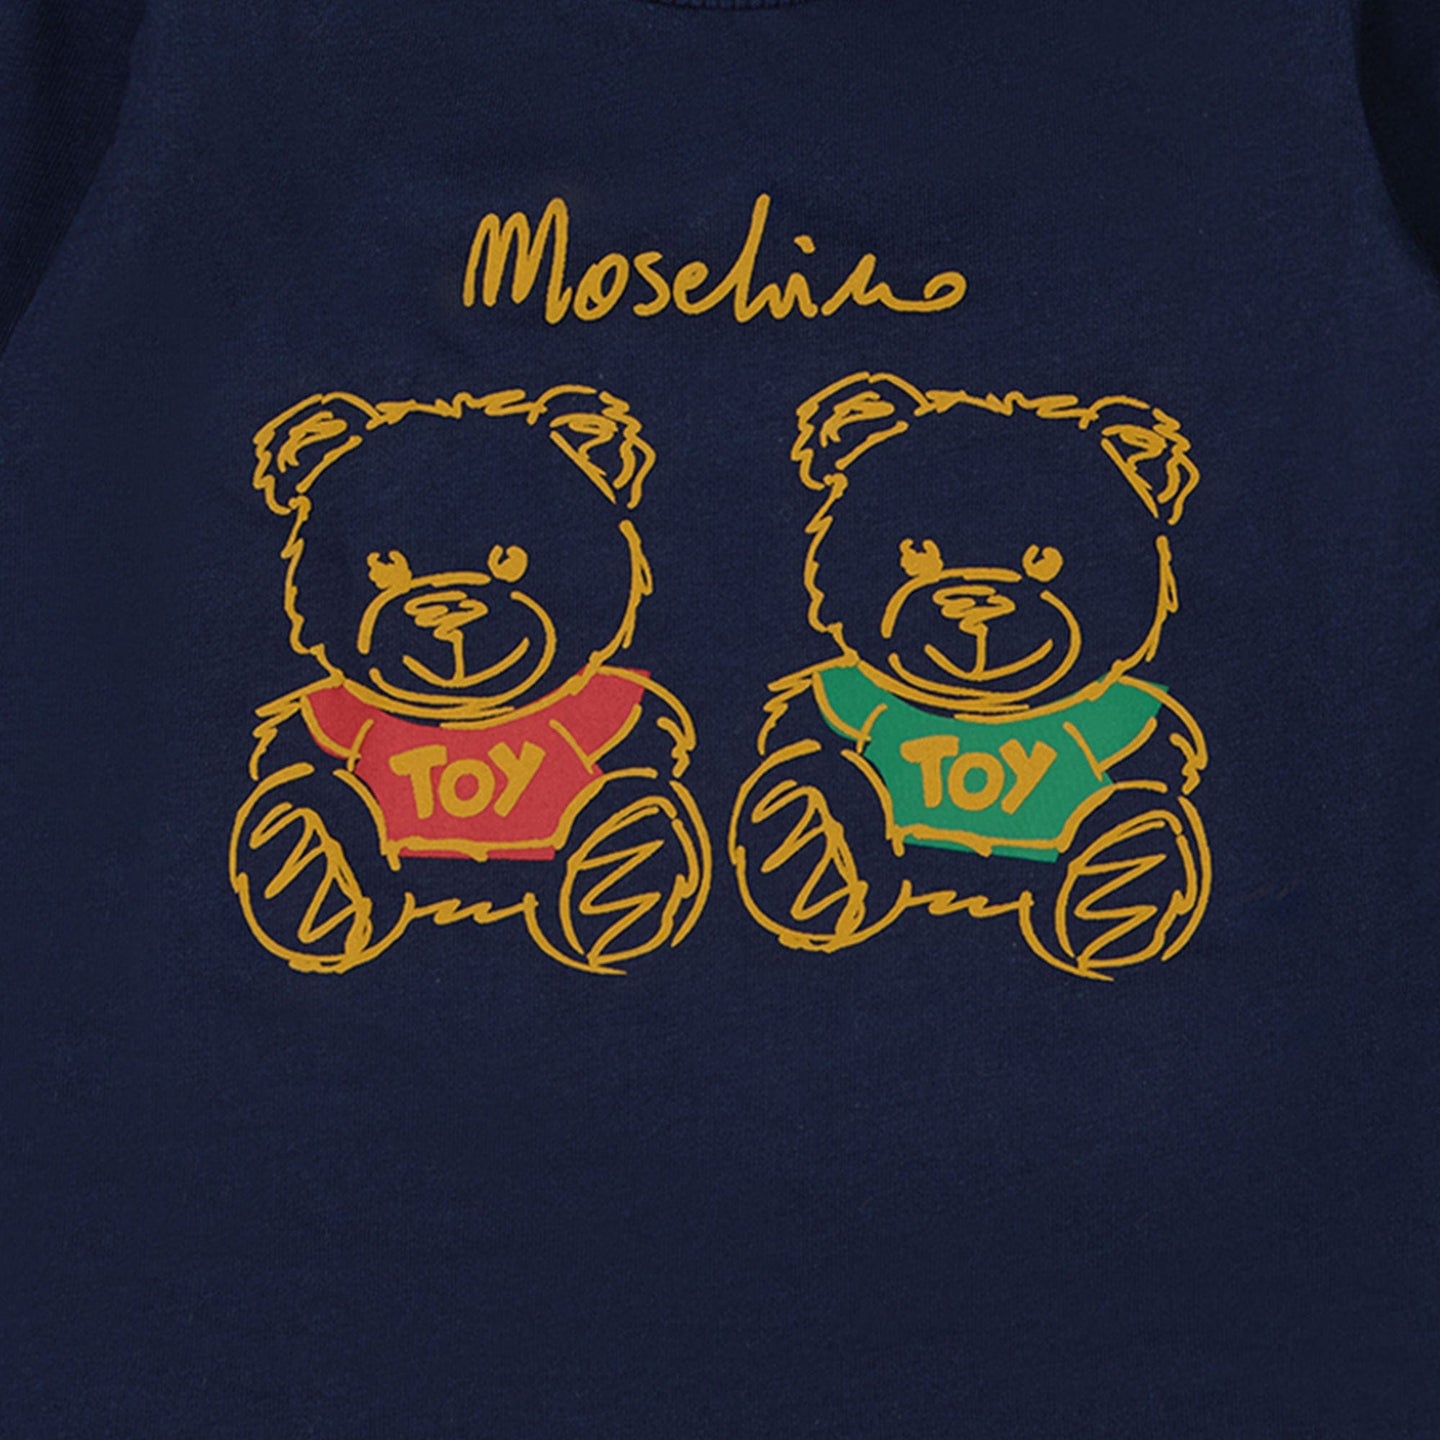 Moschino Baby Jongens T-shirt Navy 3/6